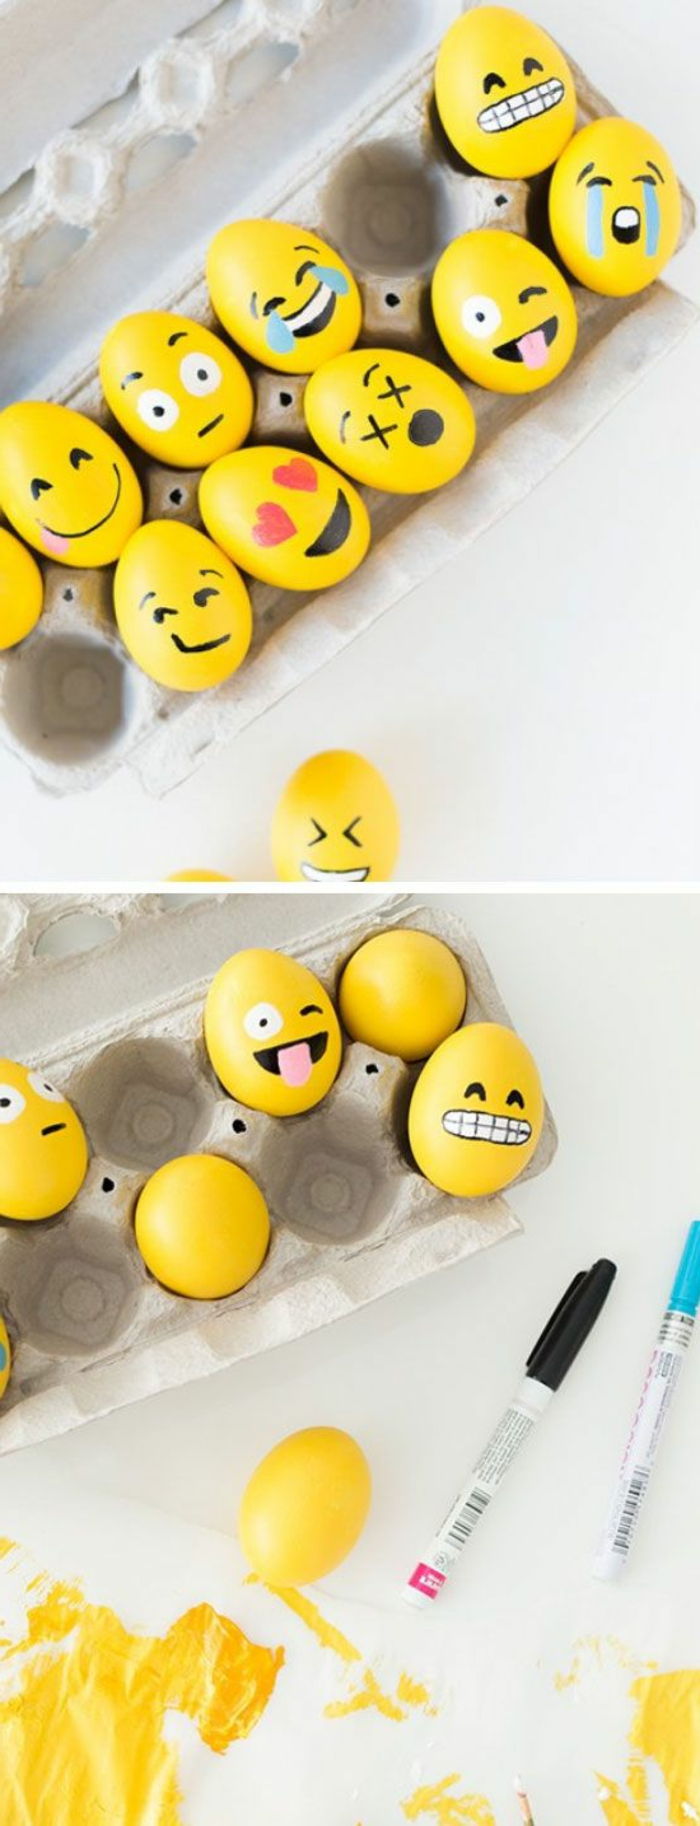 Nápady na farbu žltých veľkonočných vajíčok s emojis - rôzne vyzerá